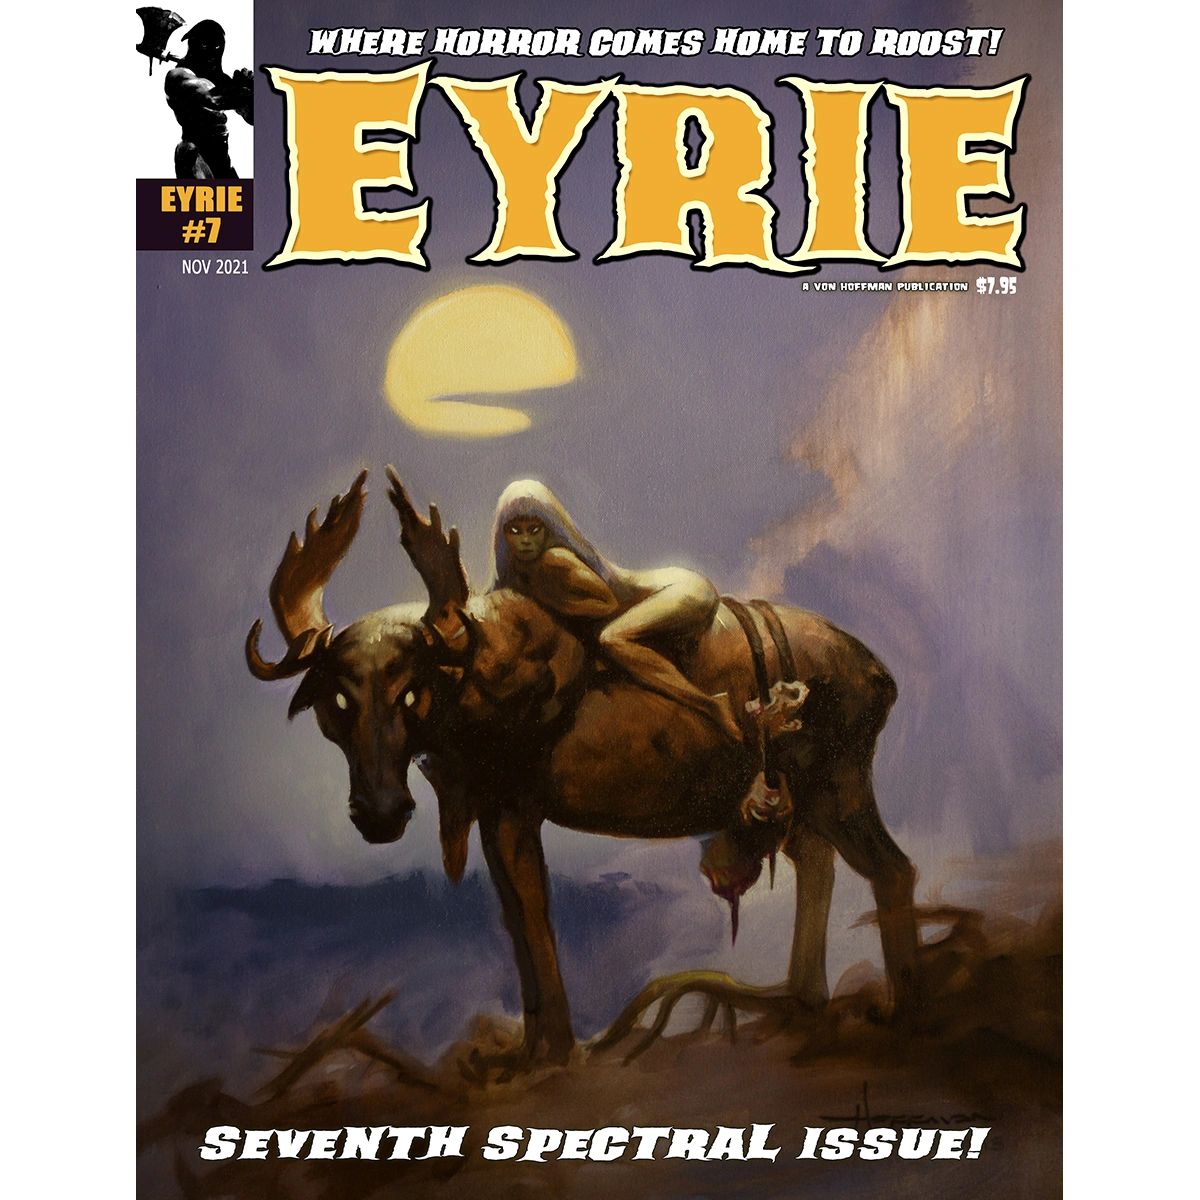 EYRIE Magazine #7